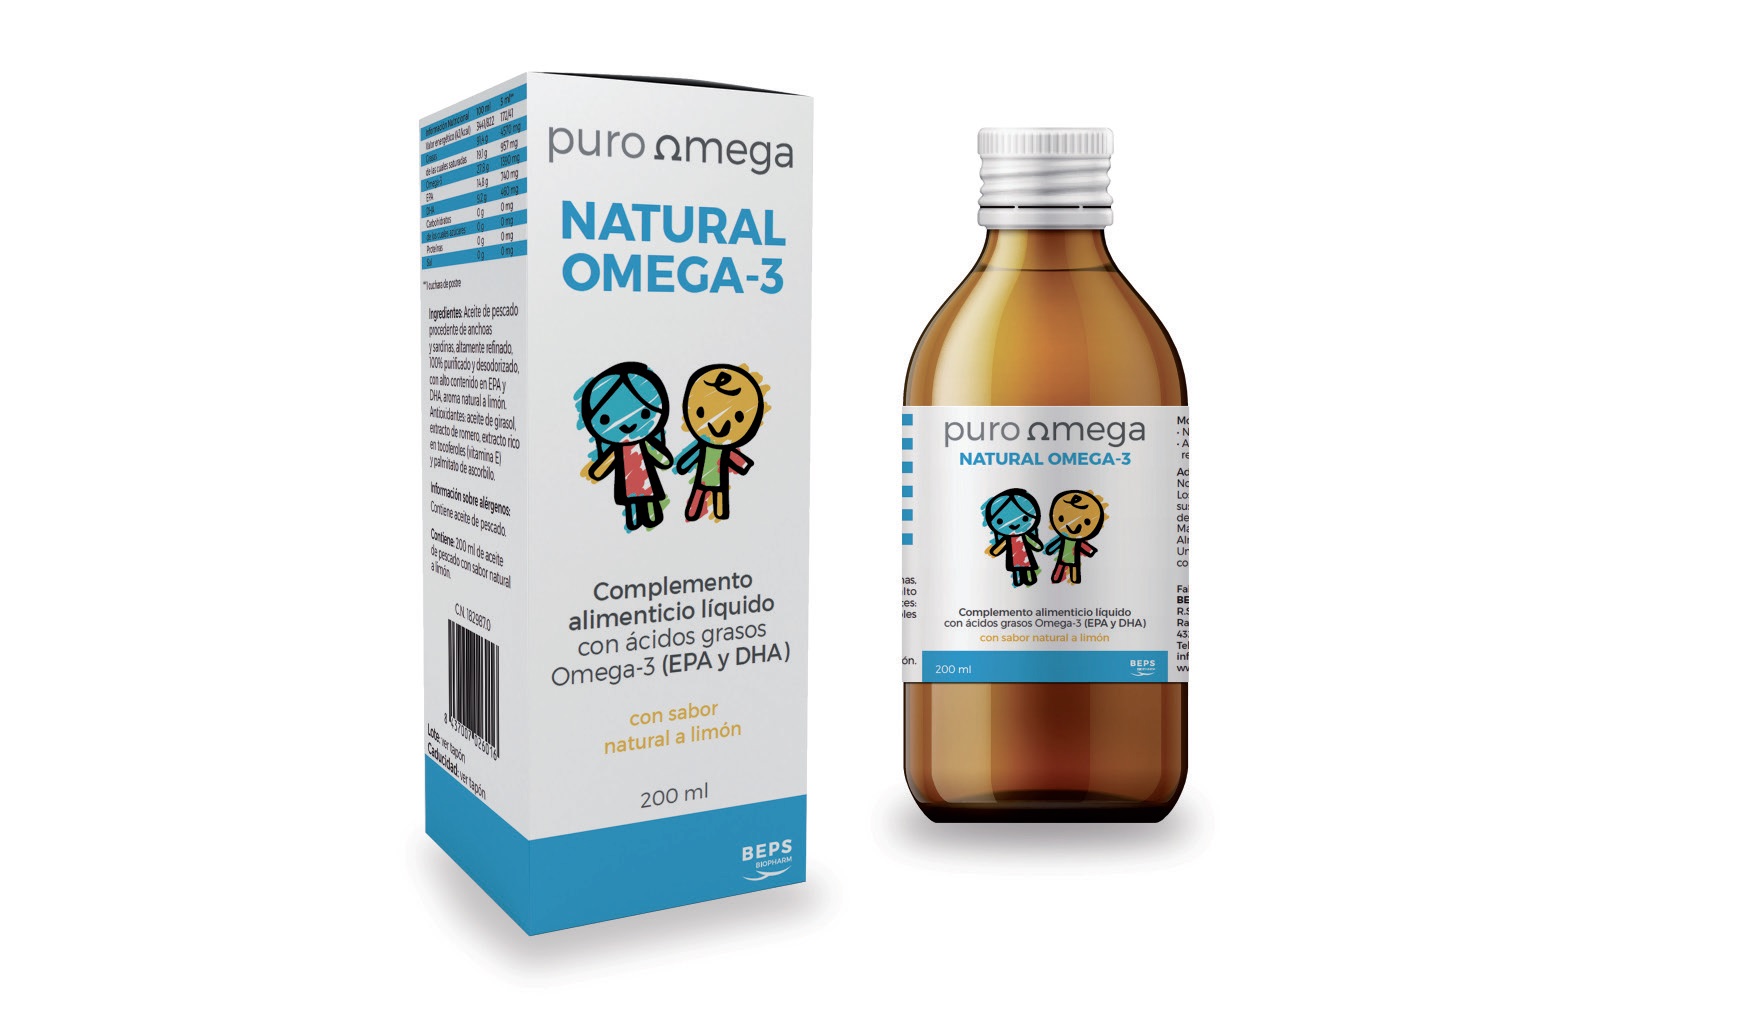 Puro Omega Natural Omega 3 Niños, 200 ml Salud de los niños